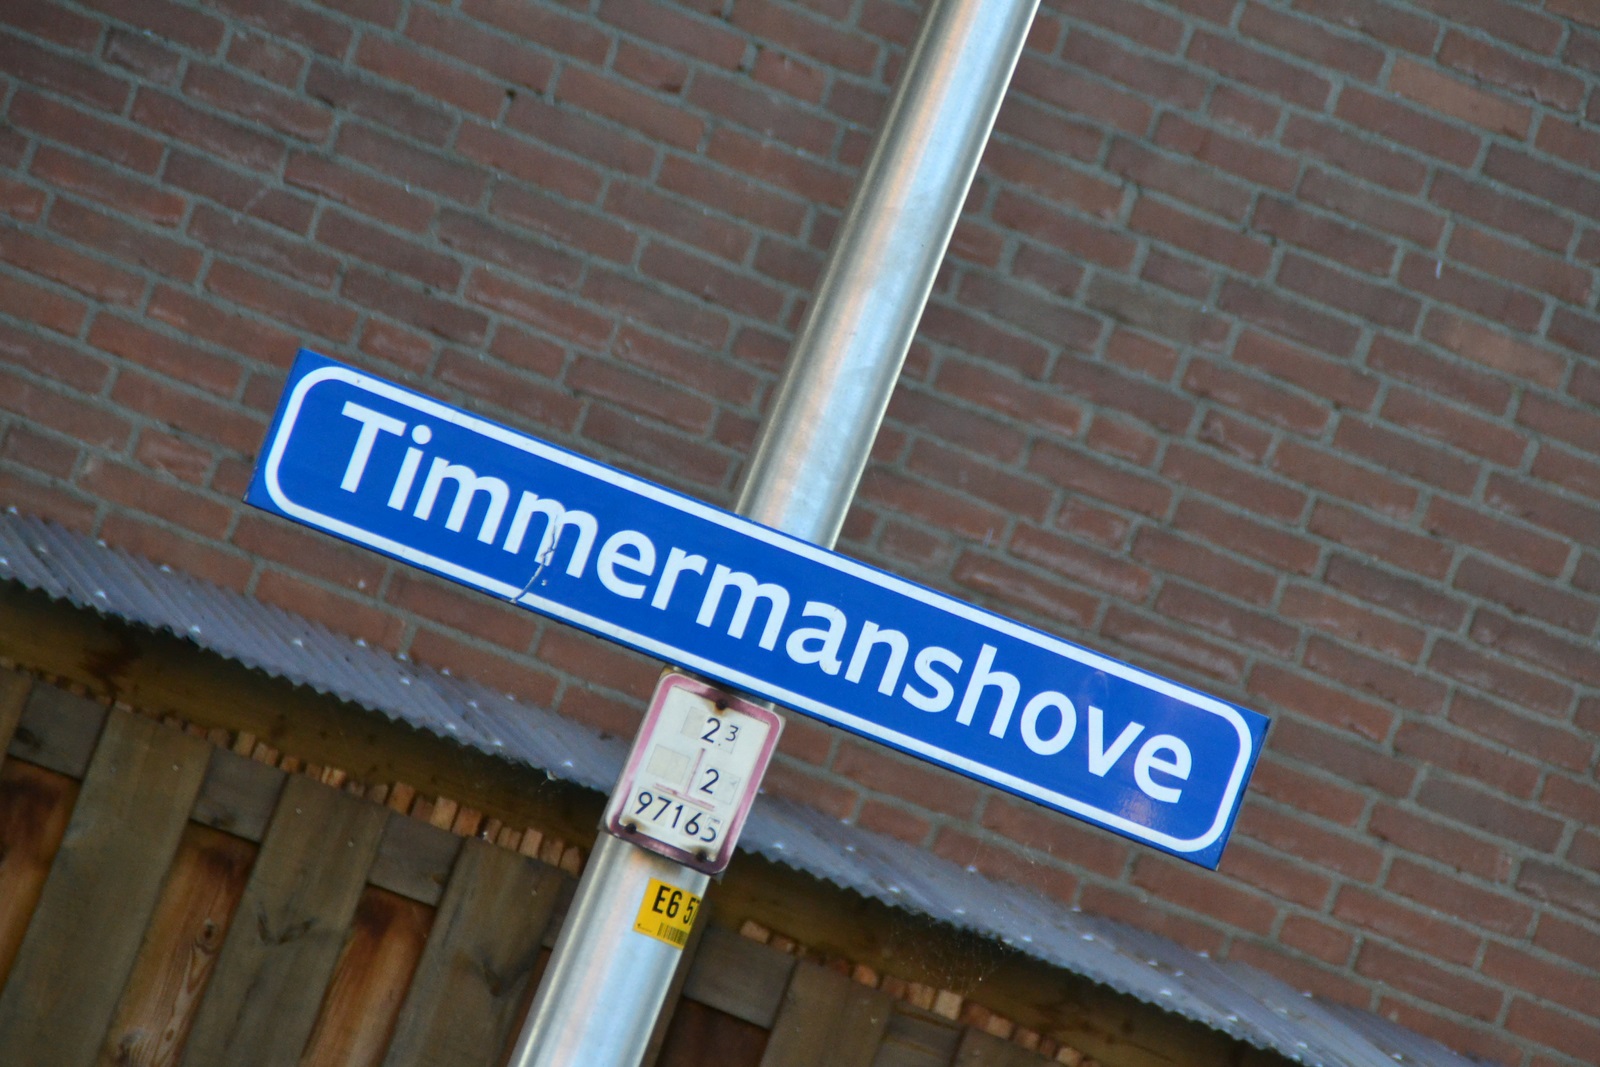 Timmermanshove